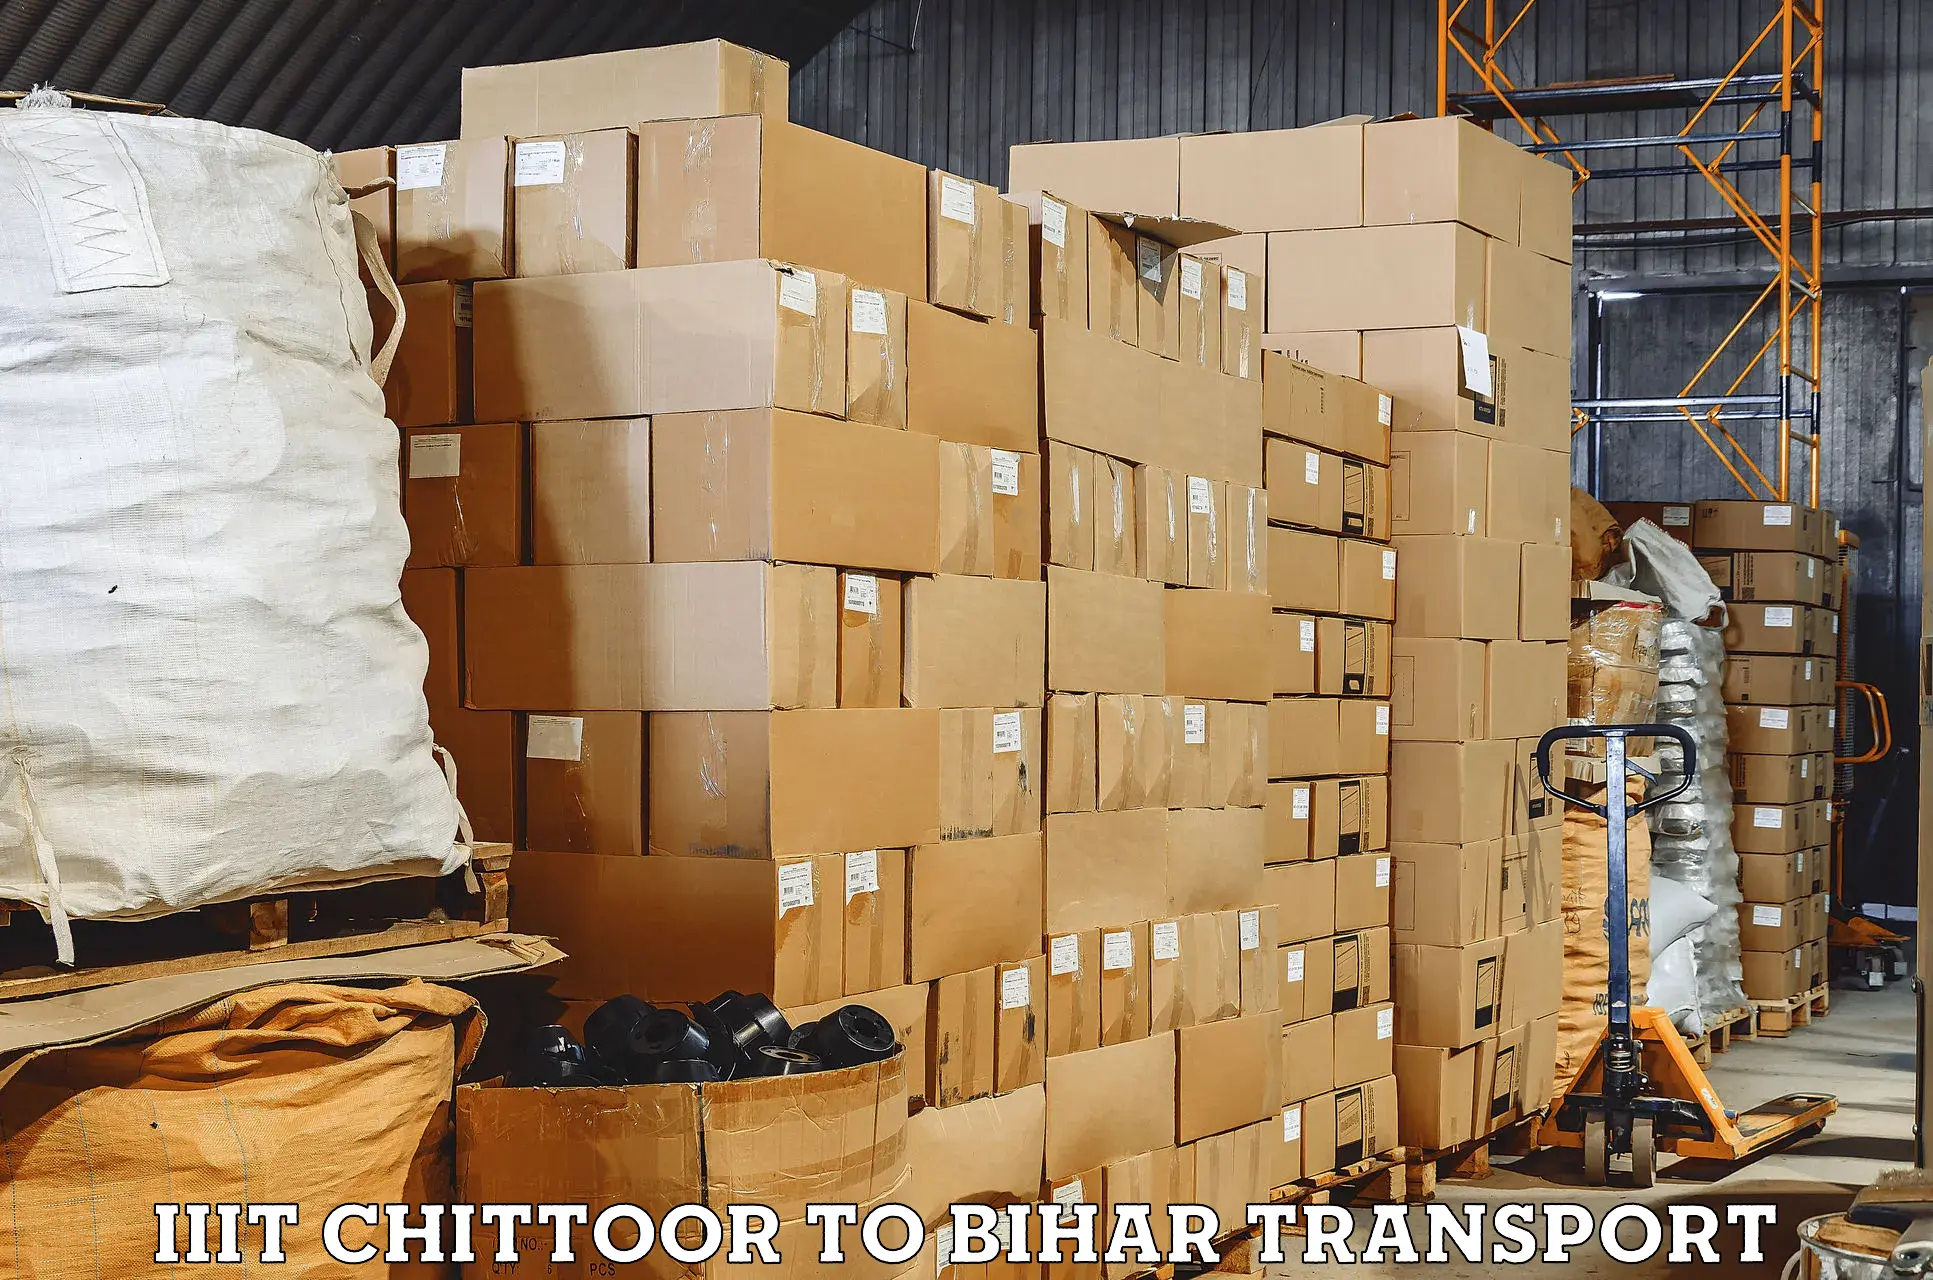 Two wheeler transport services IIIT Chittoor to Bihar